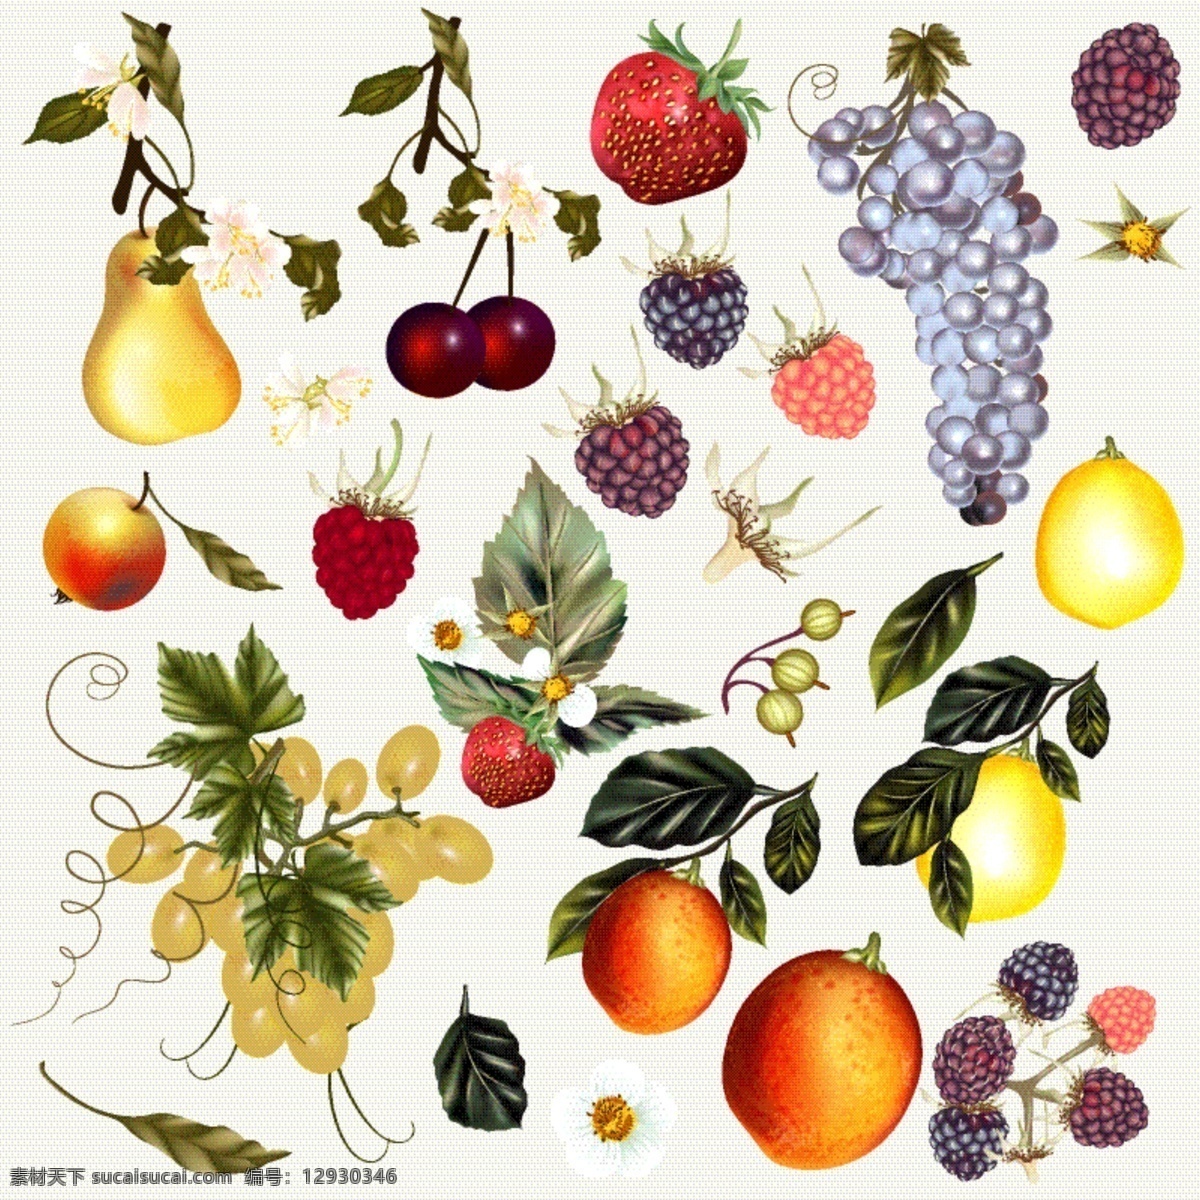 手绘水果系列 采购产品食品 手 油漆 水果 颜色 草莓 柠檬 葡萄 手绘 收藏 梨 套装 浆果 彩色 彩绘 有色